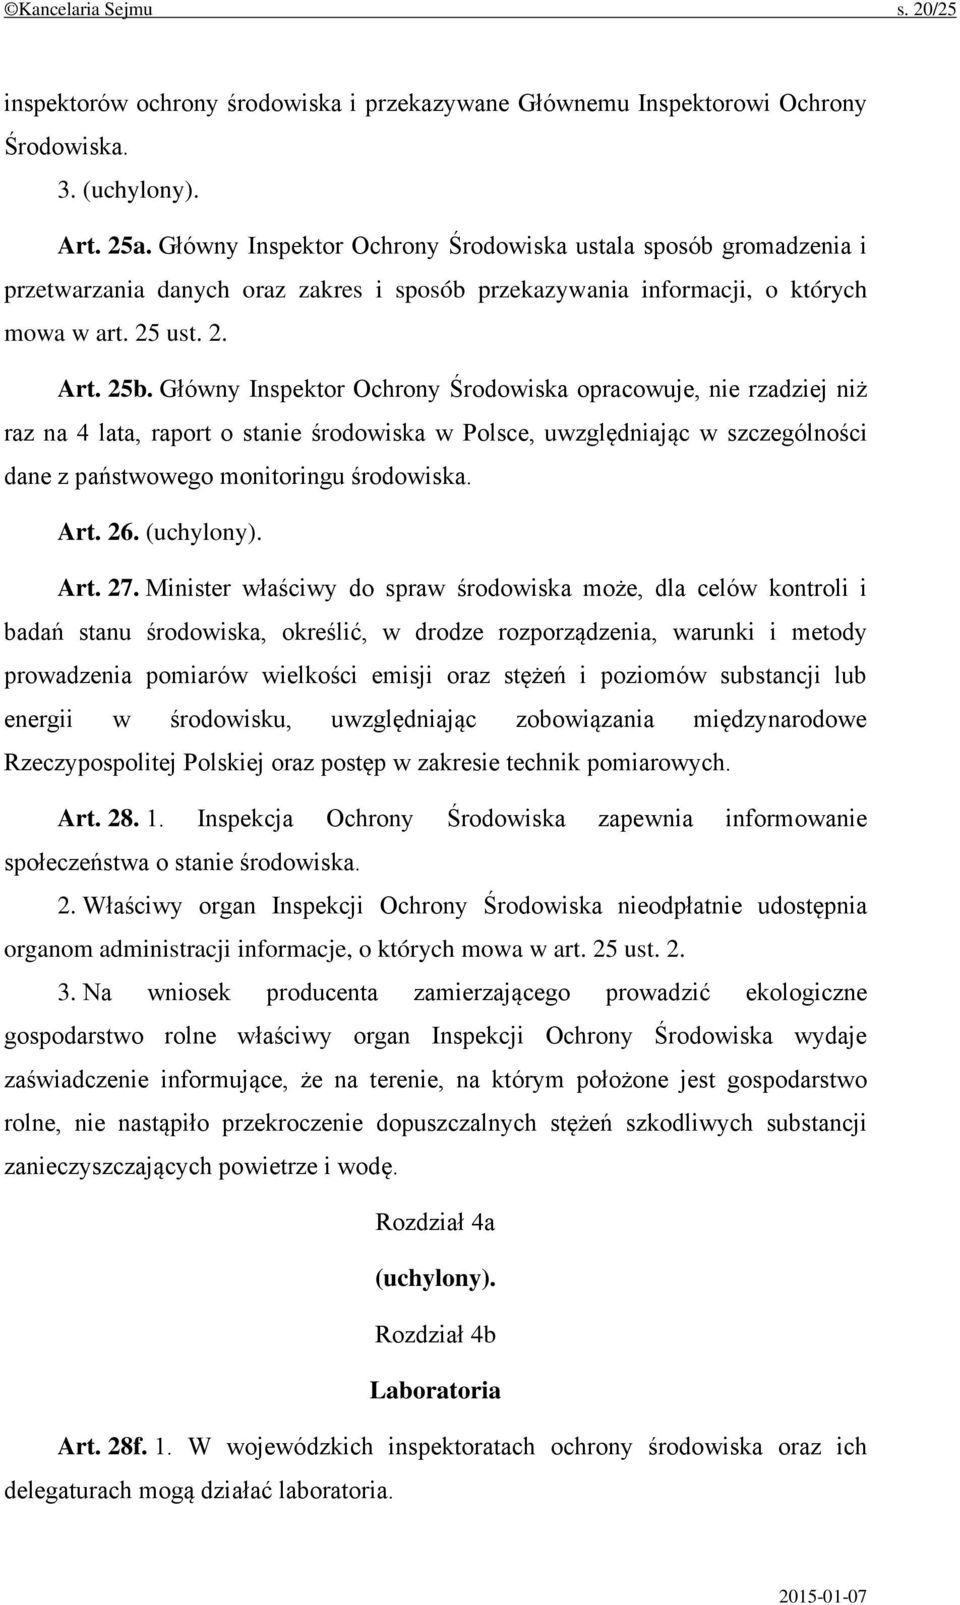 Główny Inspektor Ochrony Środowiska opracowuje, nie rzadziej niż raz na 4 lata, raport o stanie środowiska w Polsce, uwzględniając w szczególności dane z państwowego monitoringu środowiska. Art. 26.